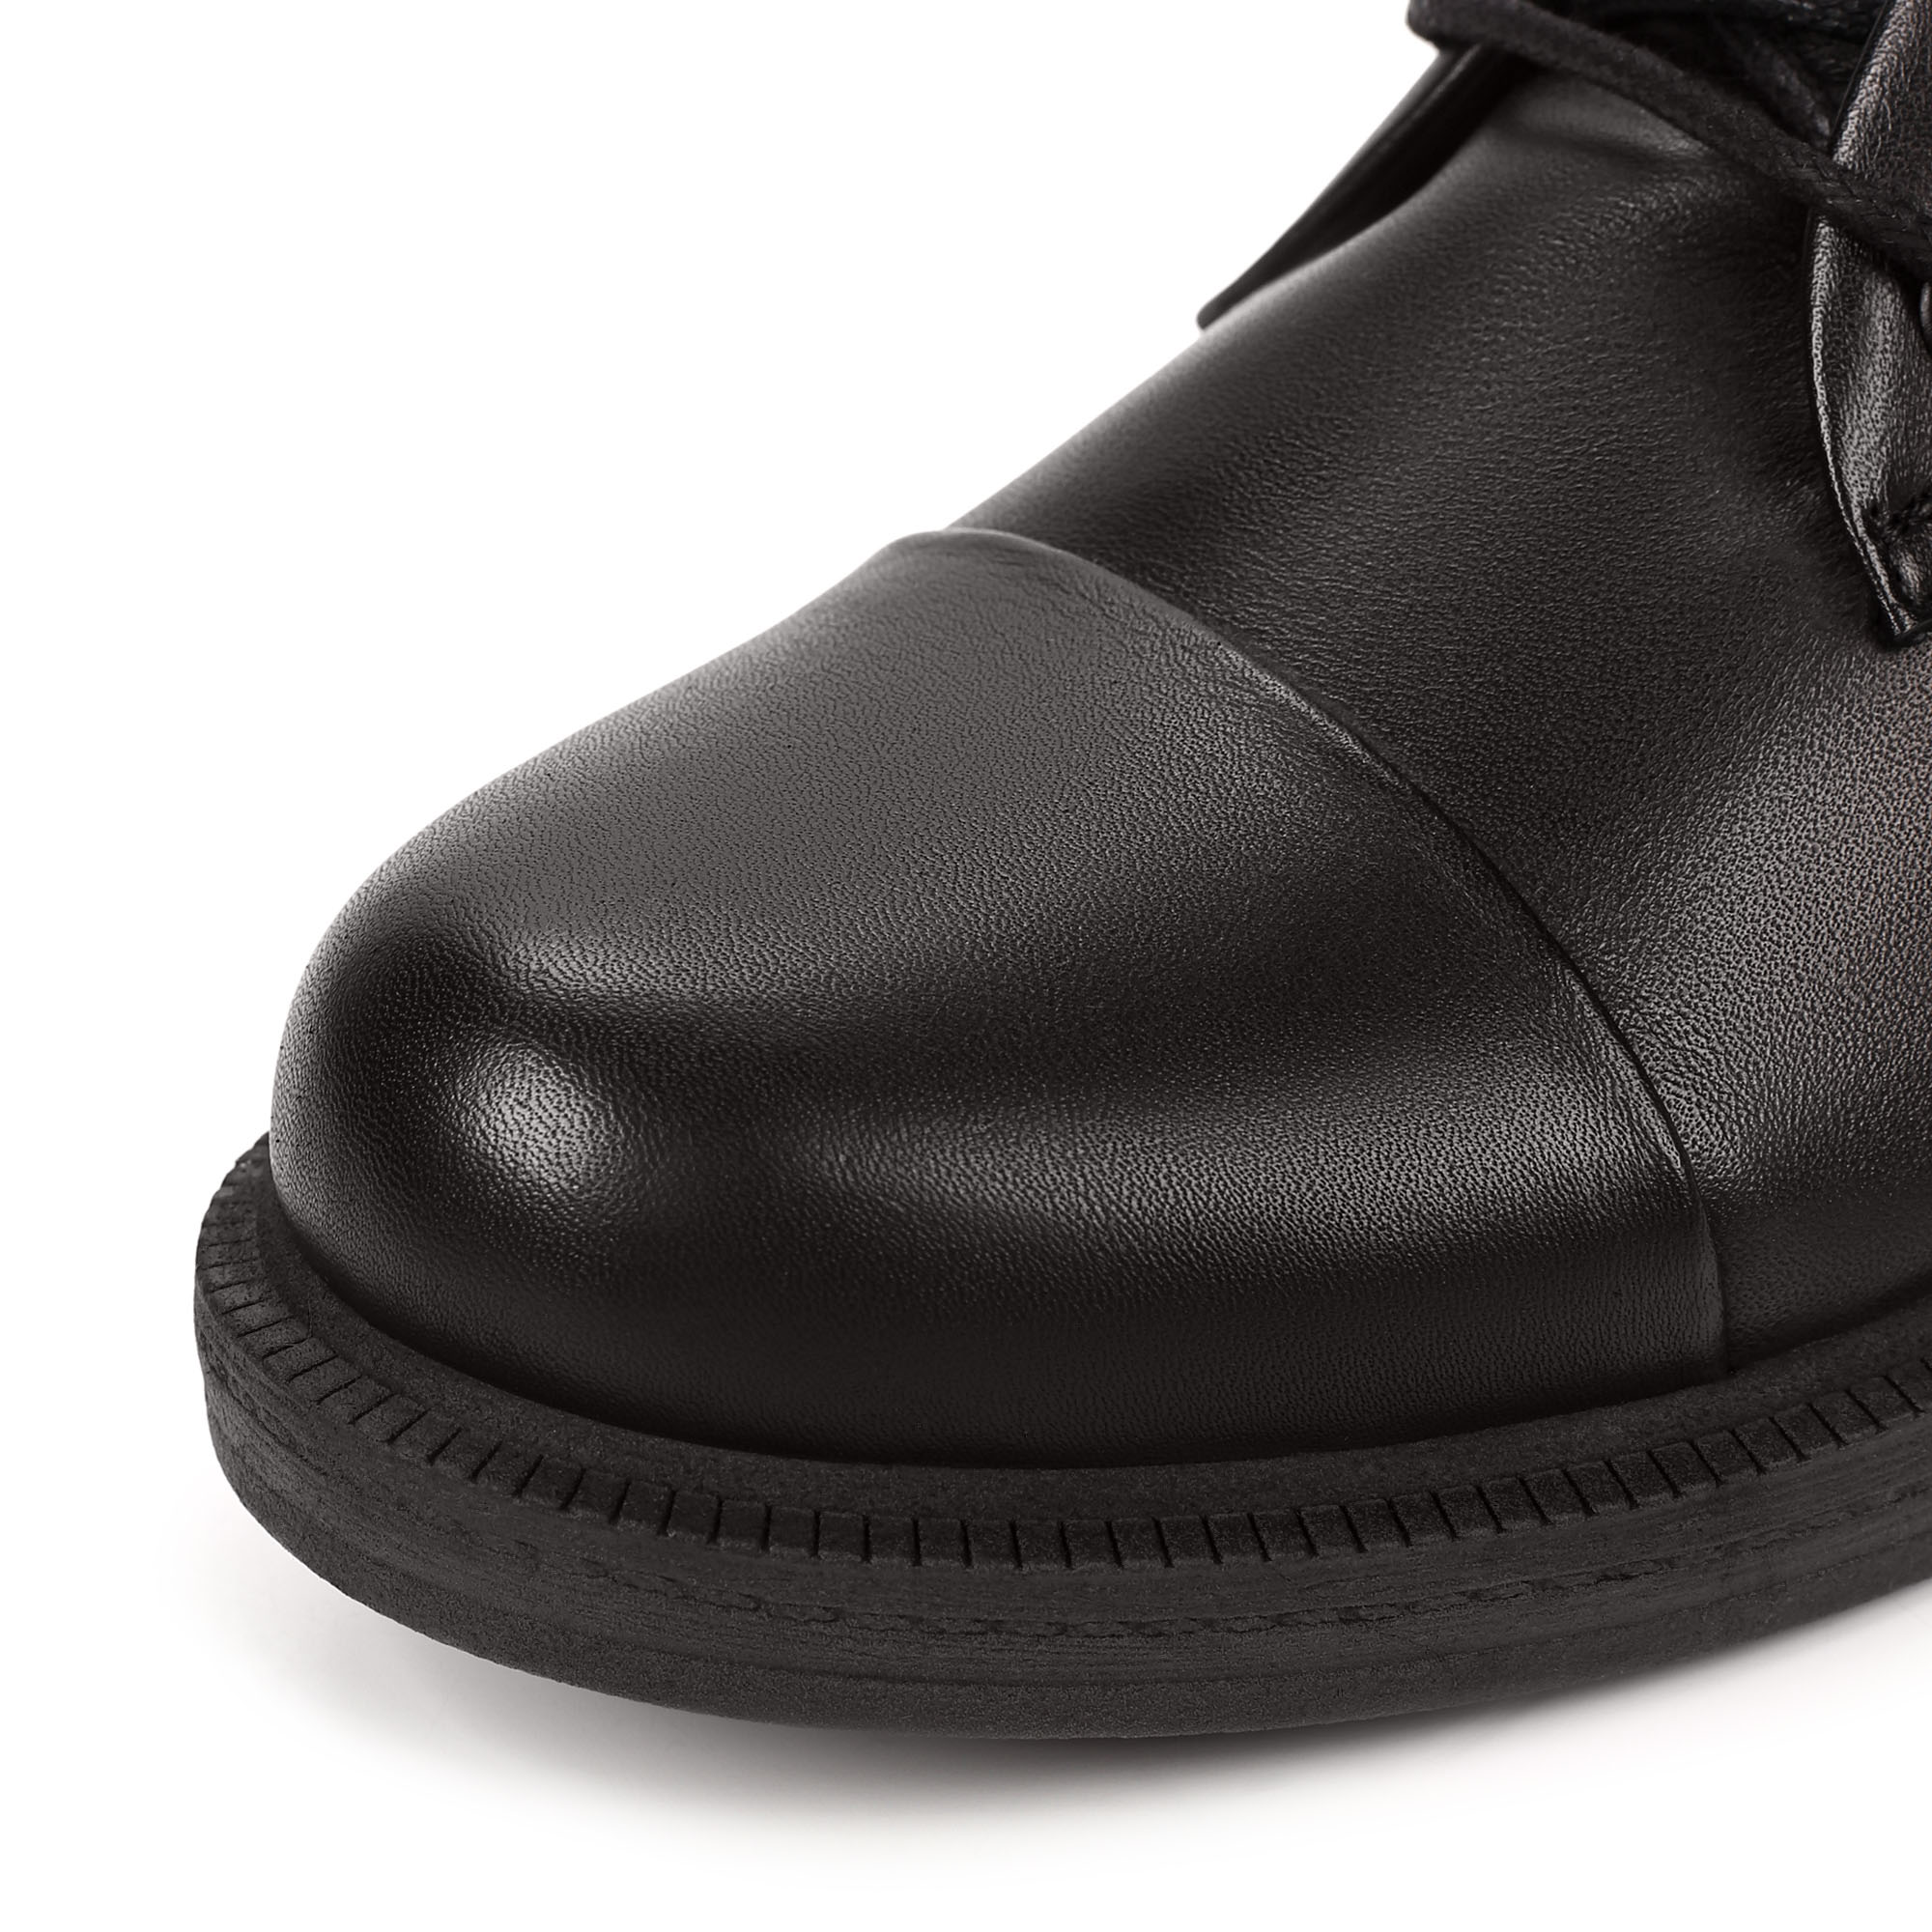 Ботинки Thomas Munz 539-010A-5102, цвет черный, размер 38 - фото 6